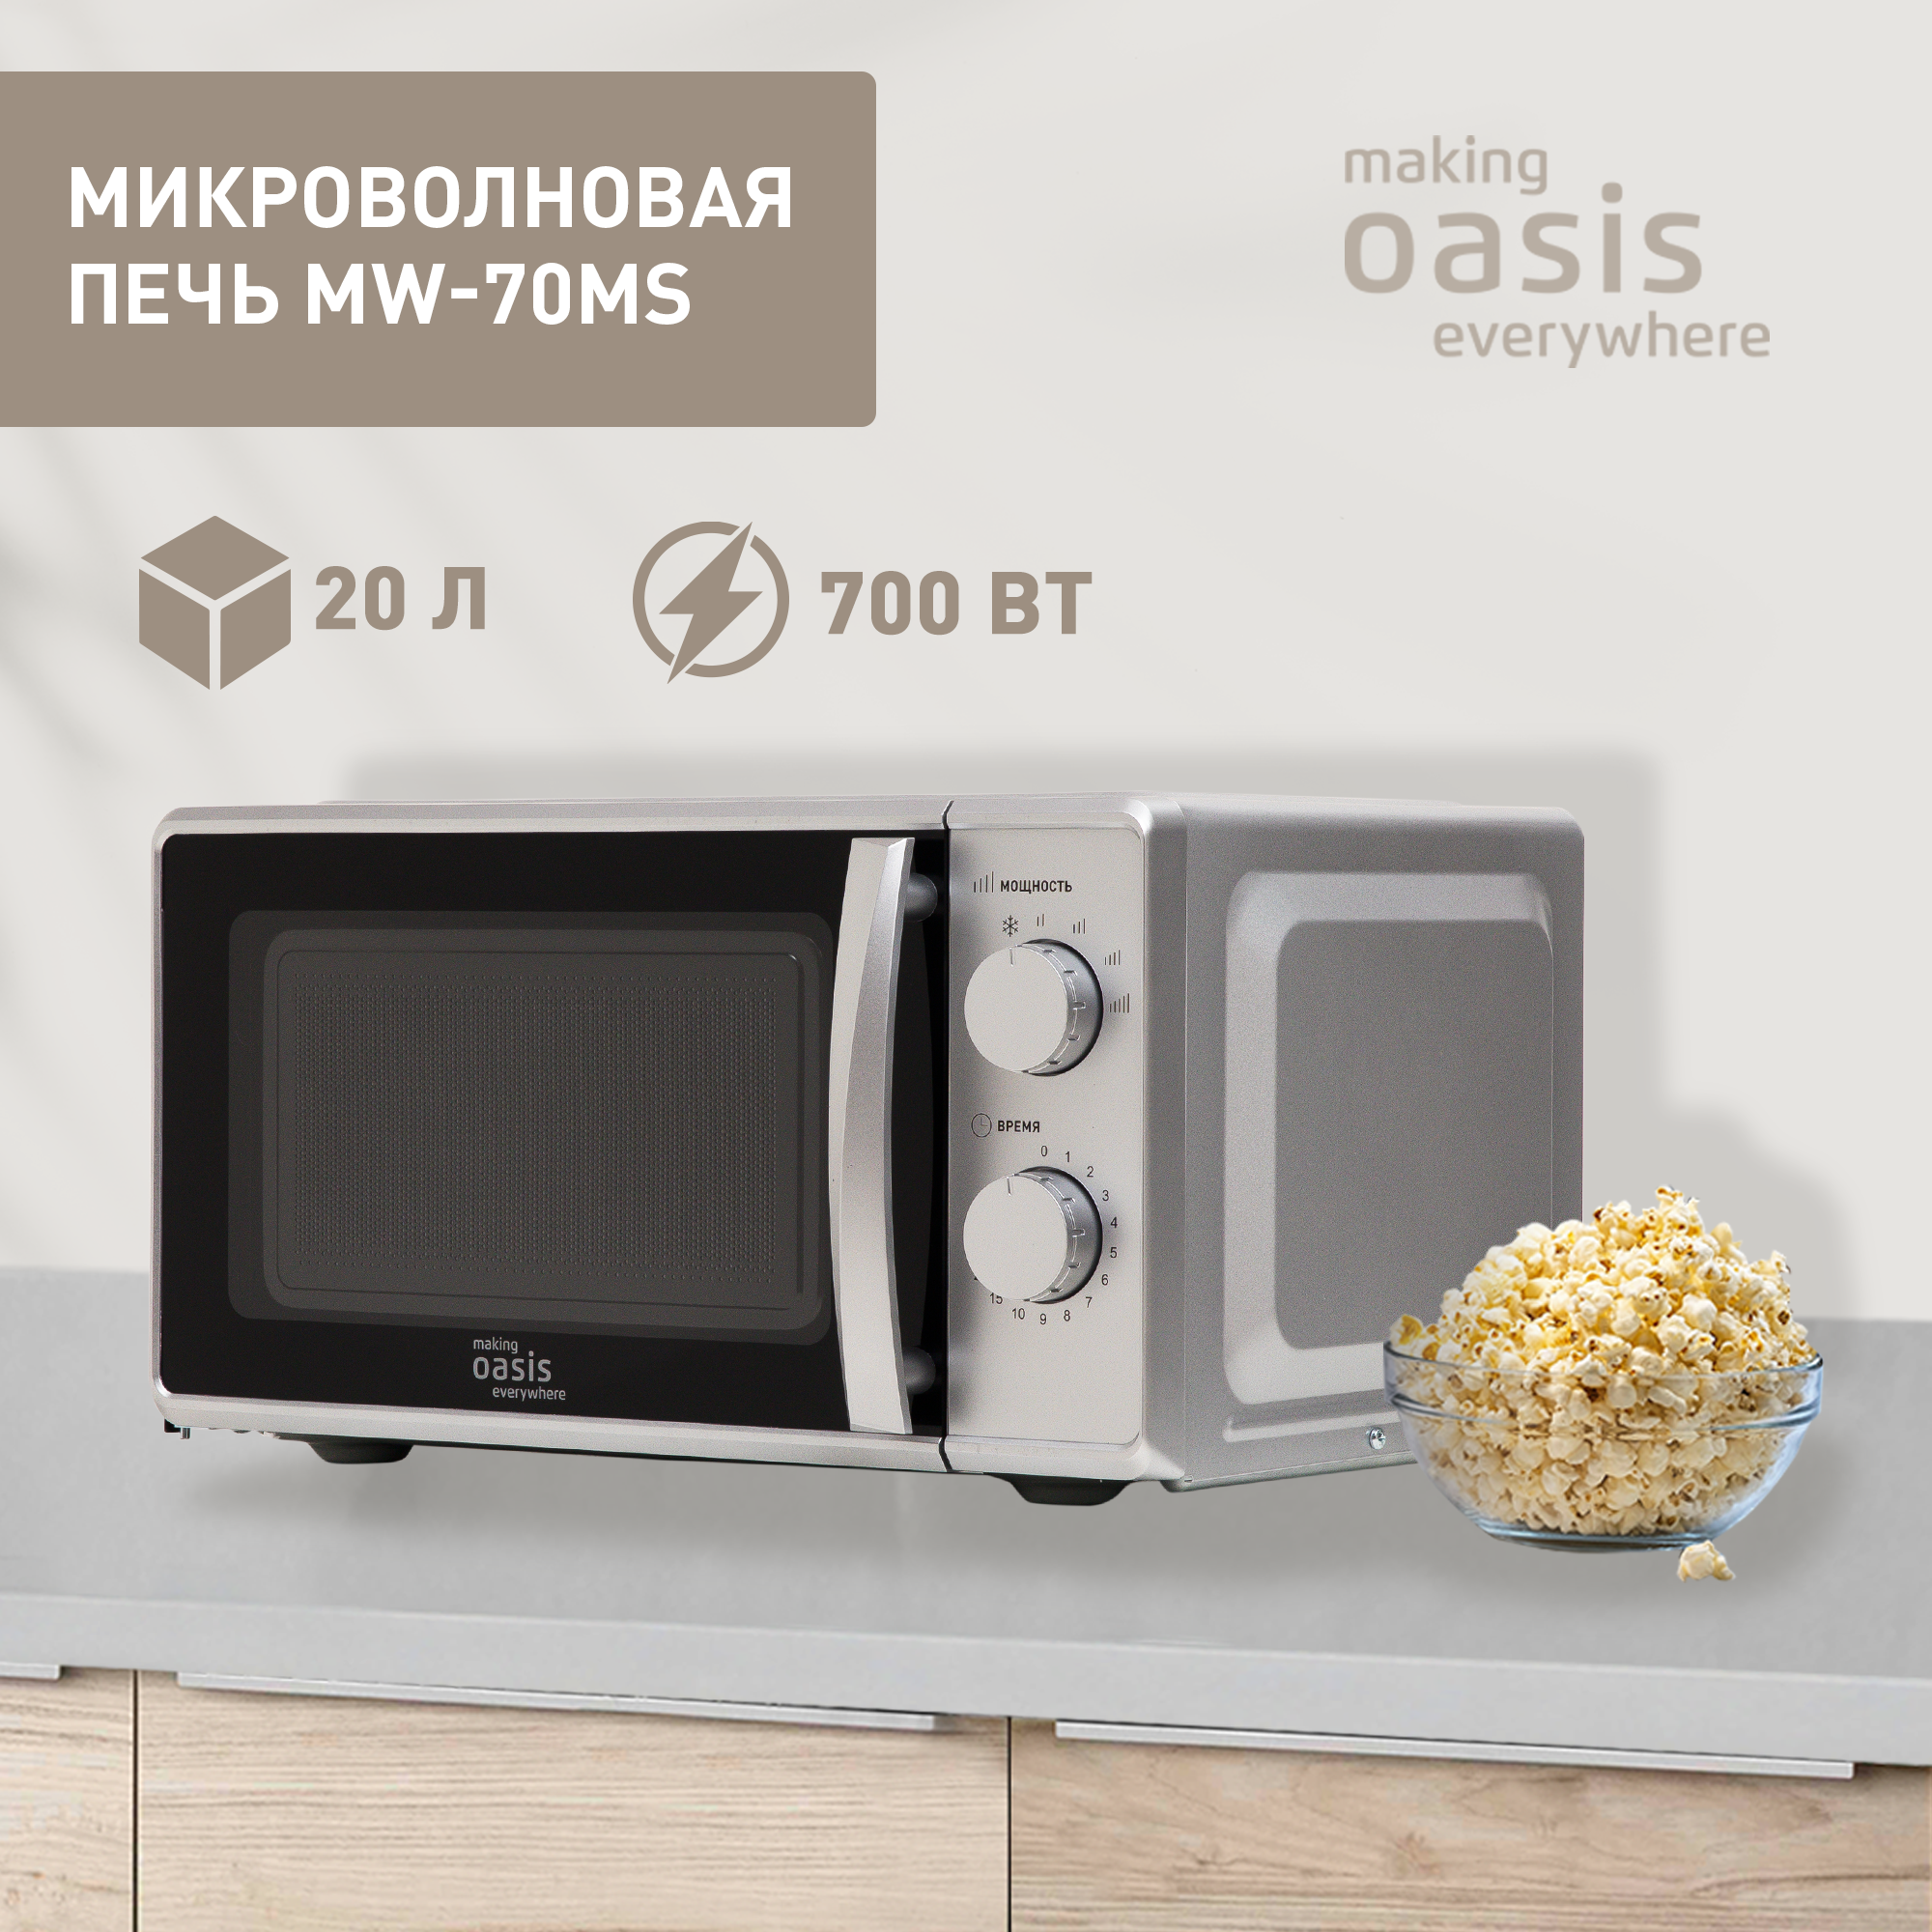 Микроволновая печь соло making oasis everywhere MW-70MS серебристая - купить в sotomania.ru, цена на Мегамаркет